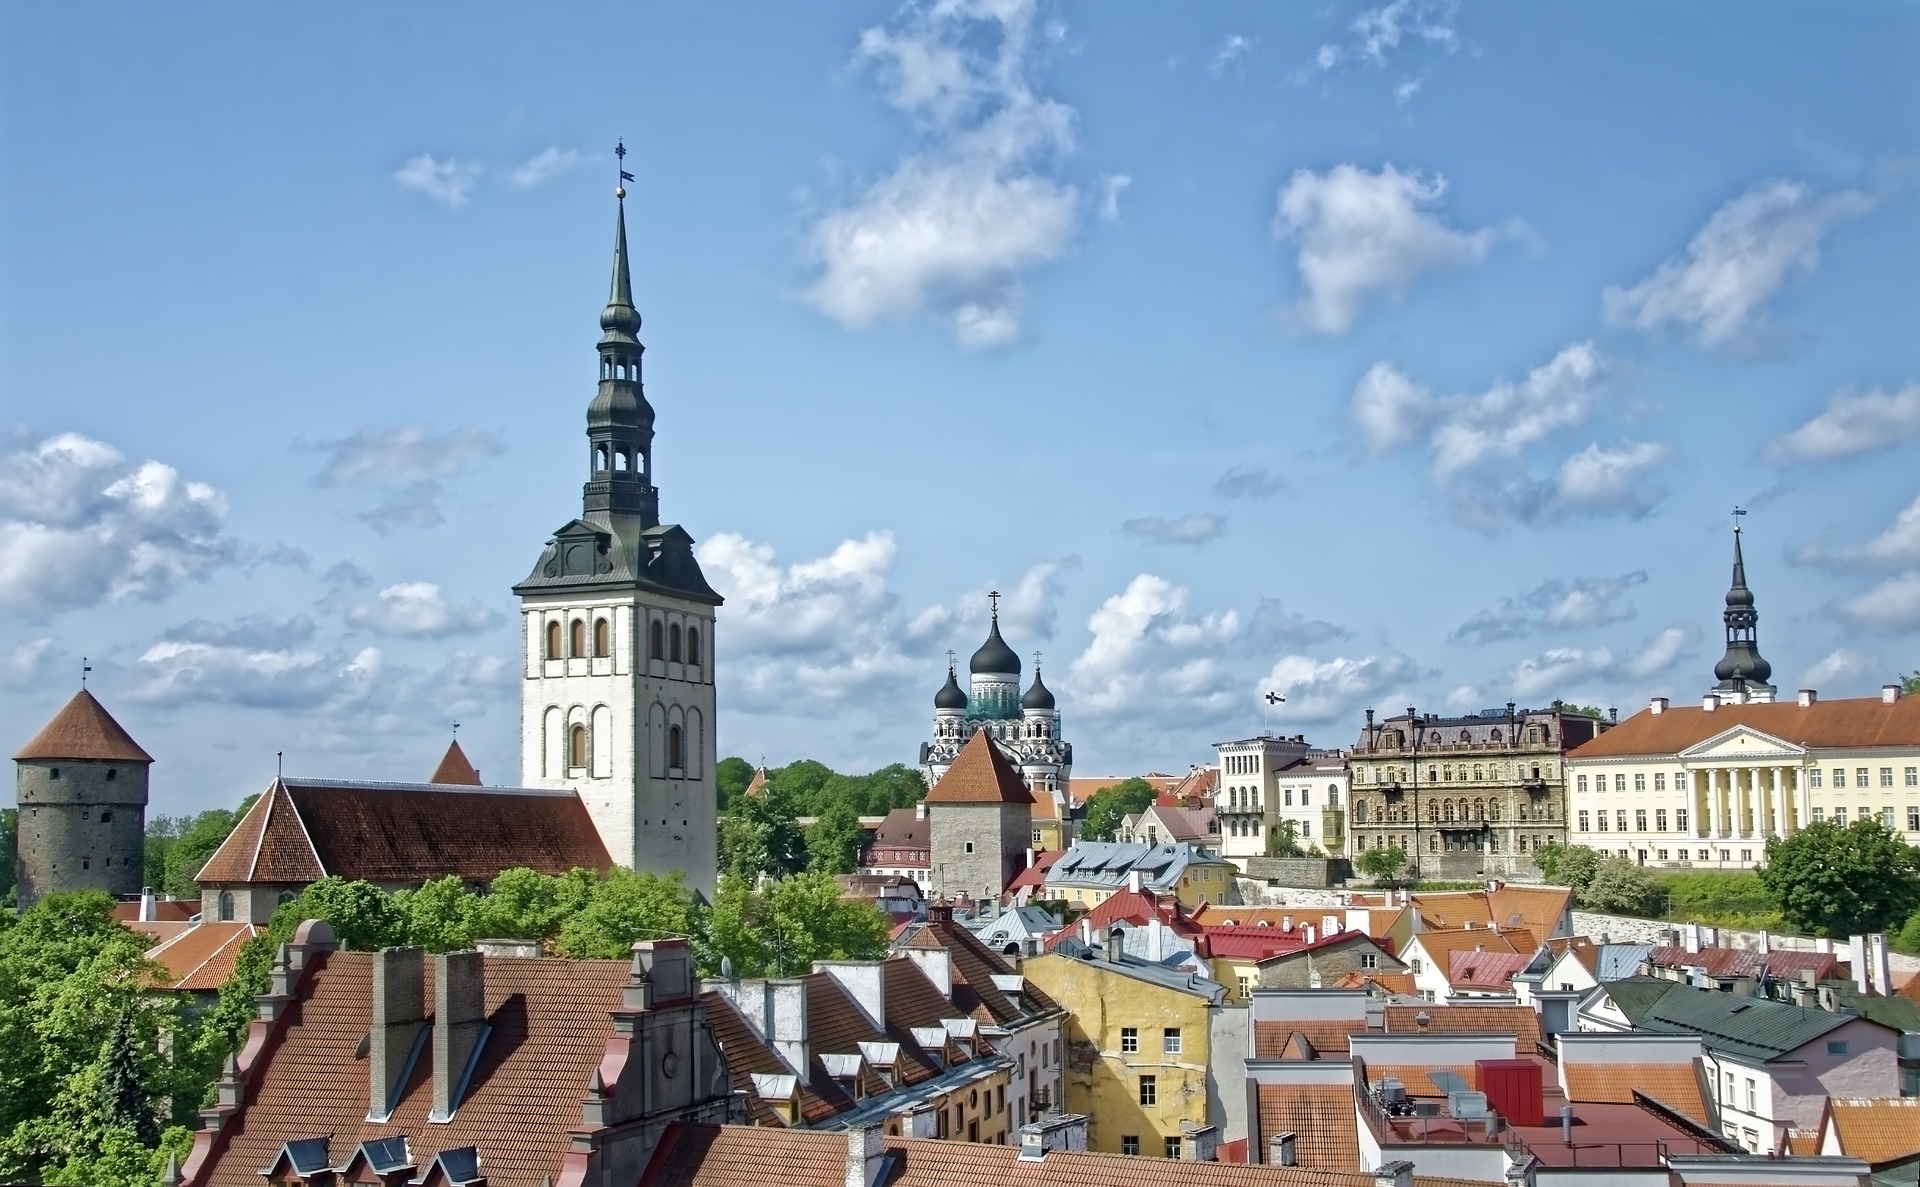 دليل عن دول البلطيق لاتفيا و ليتوانيا و أستونيا و أهم الأماكن السياحية بها